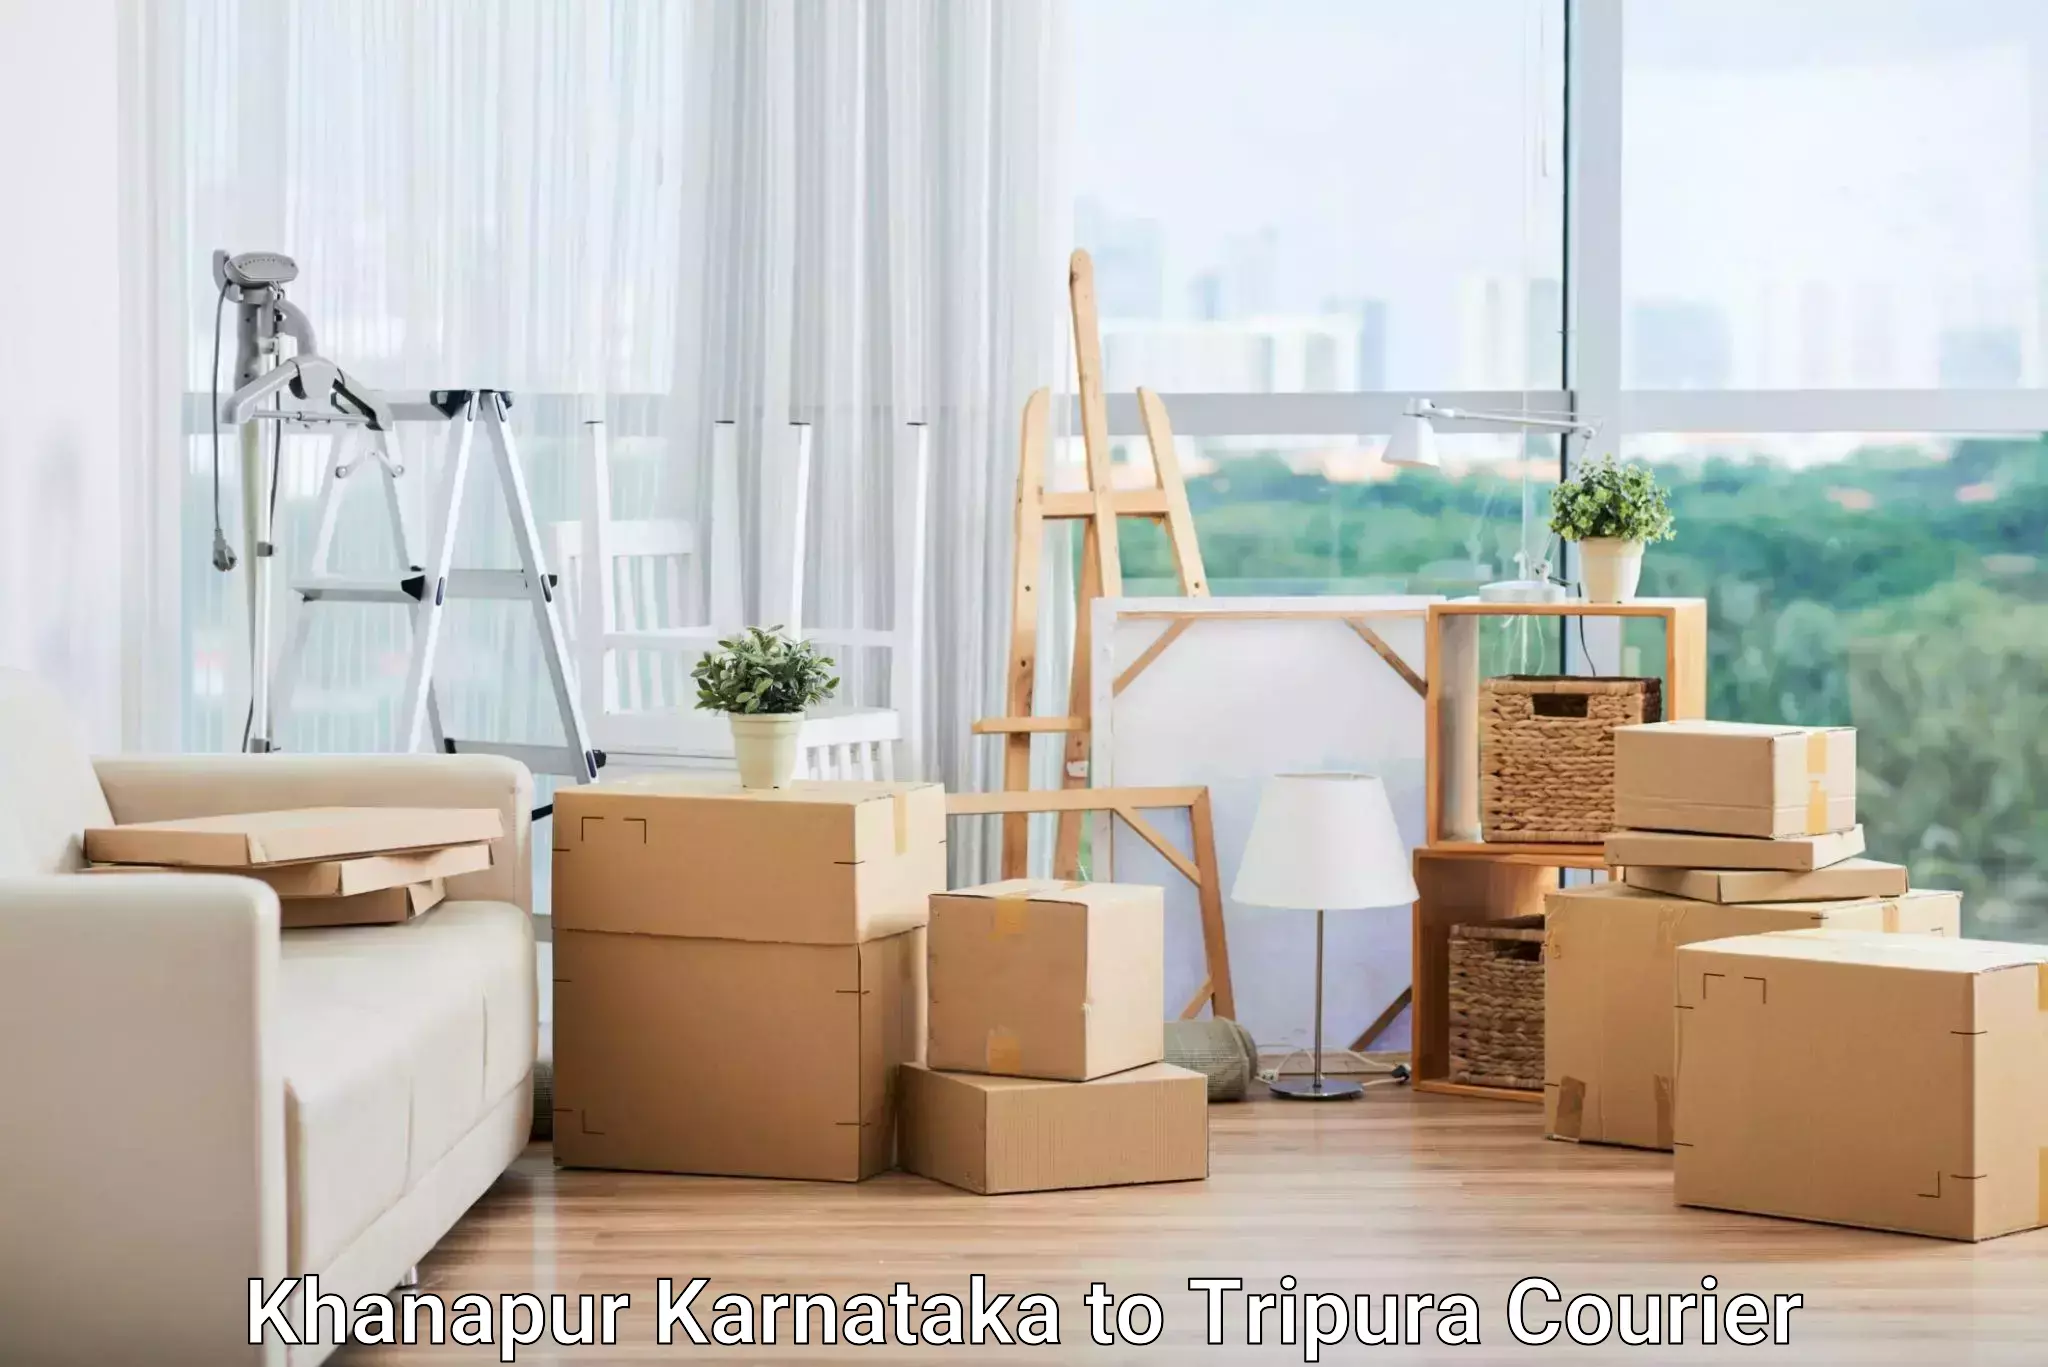 Global shipping networks Khanapur Karnataka to Santirbazar